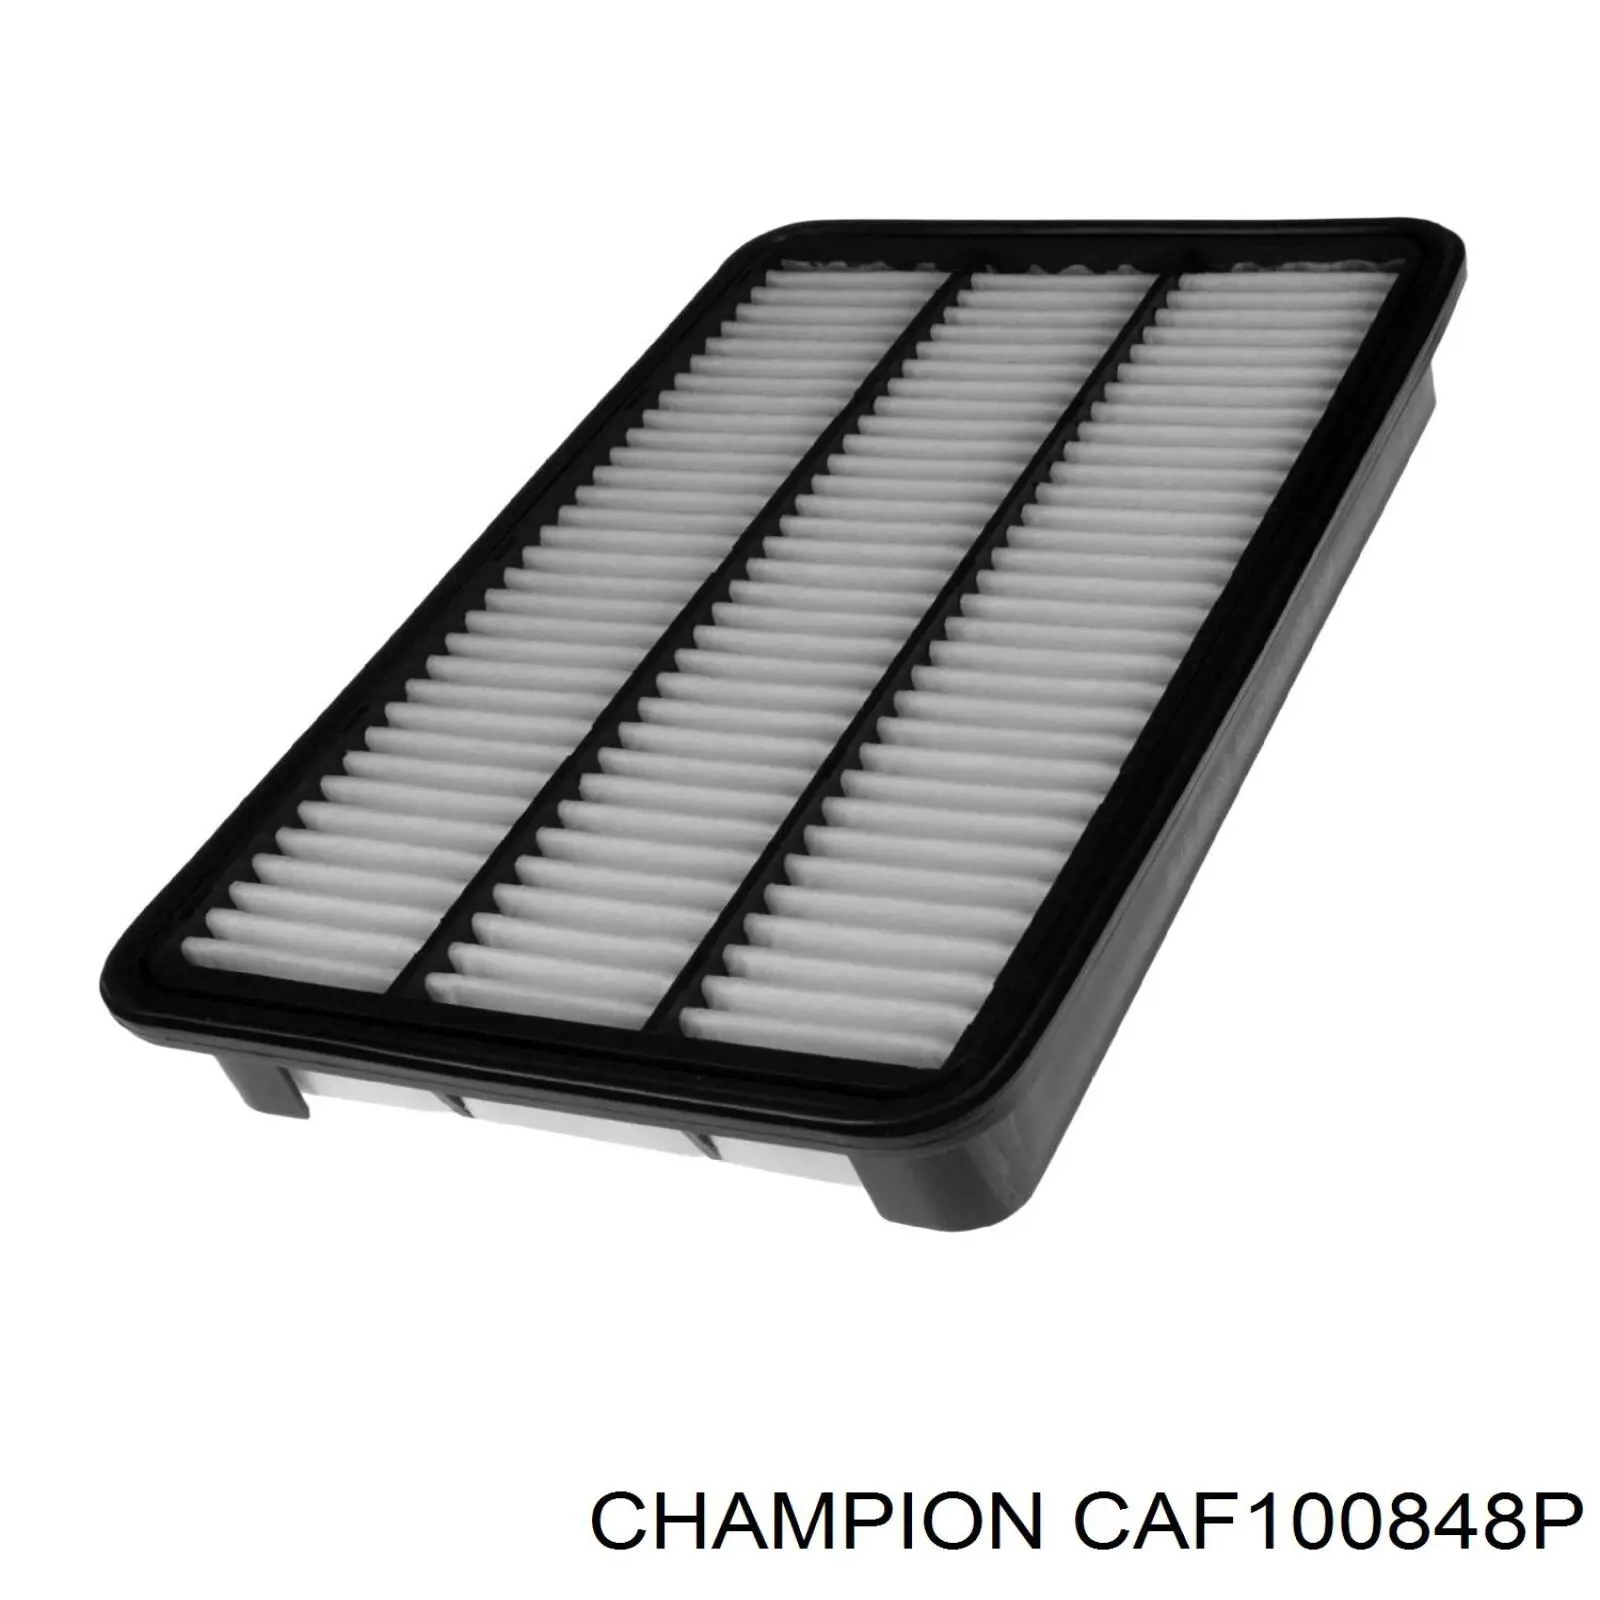 CAF100848P Champion filtro de aire